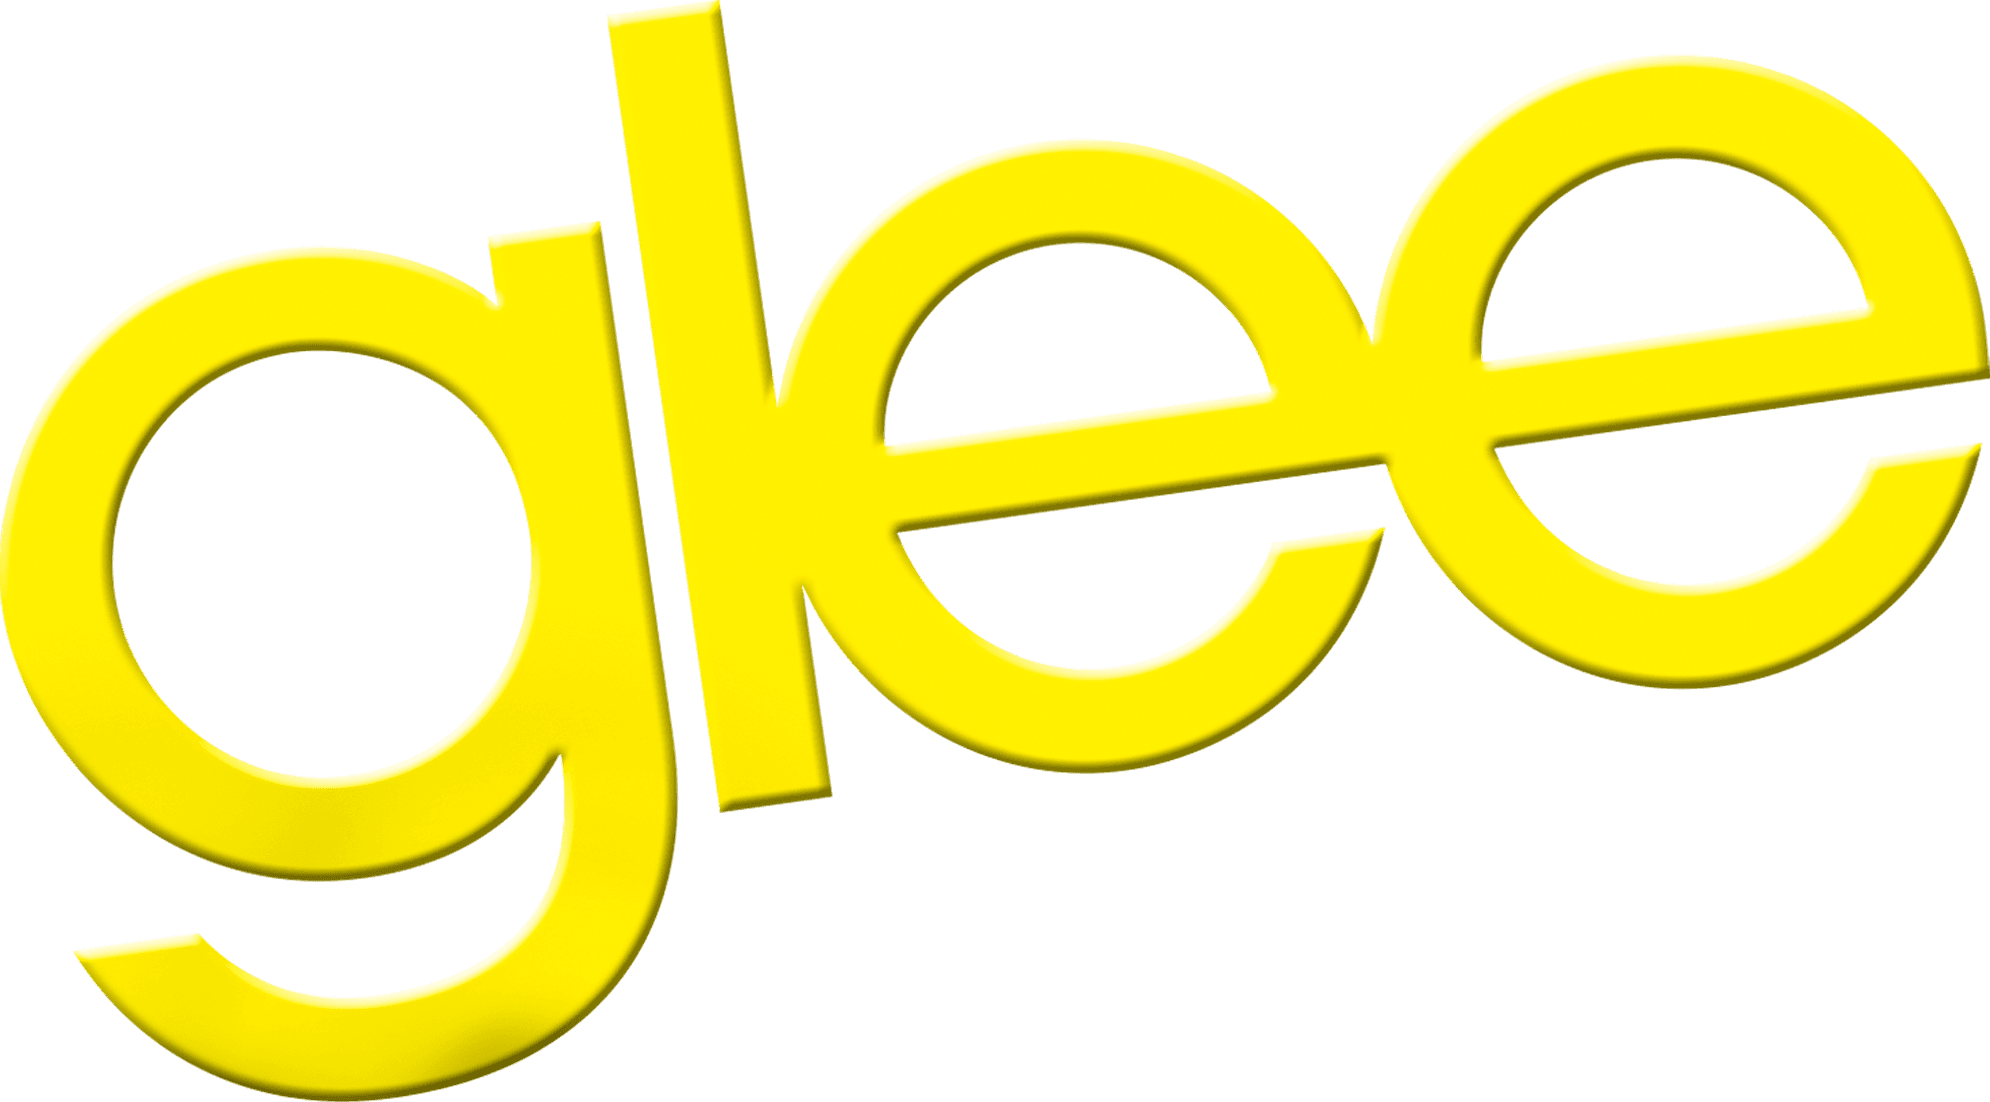 Glee logo